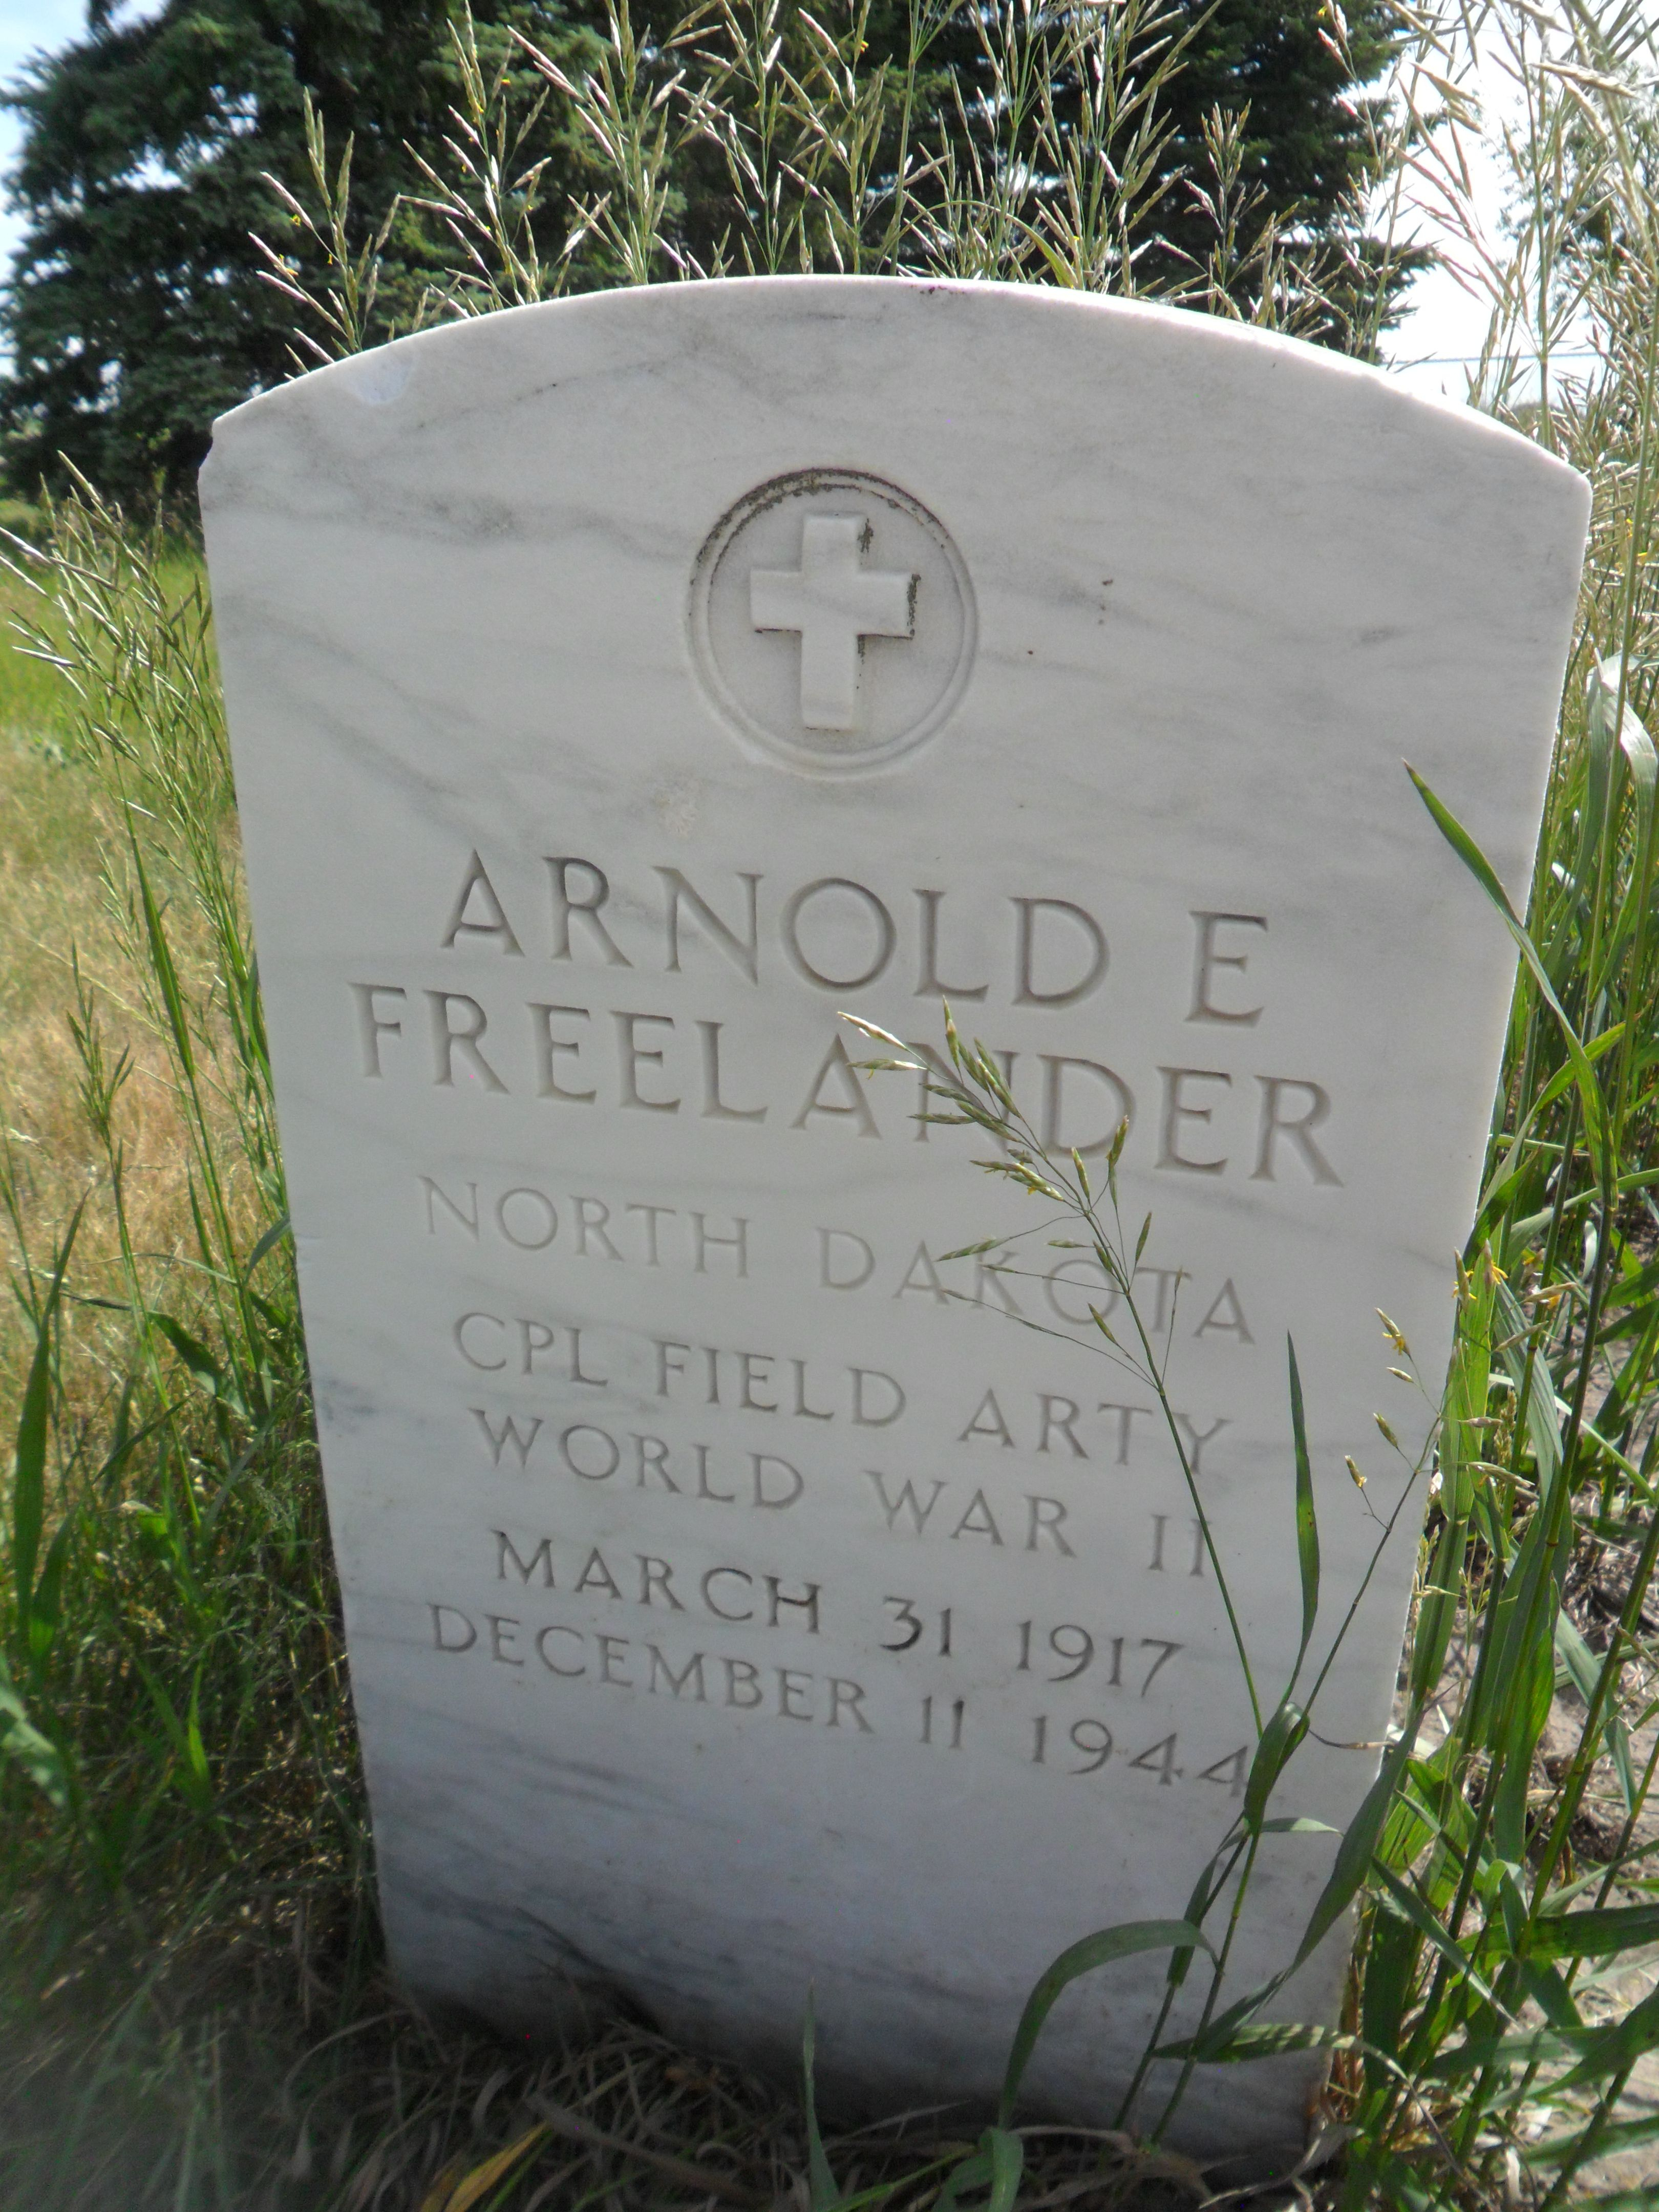 Arnold E. Freelander photo